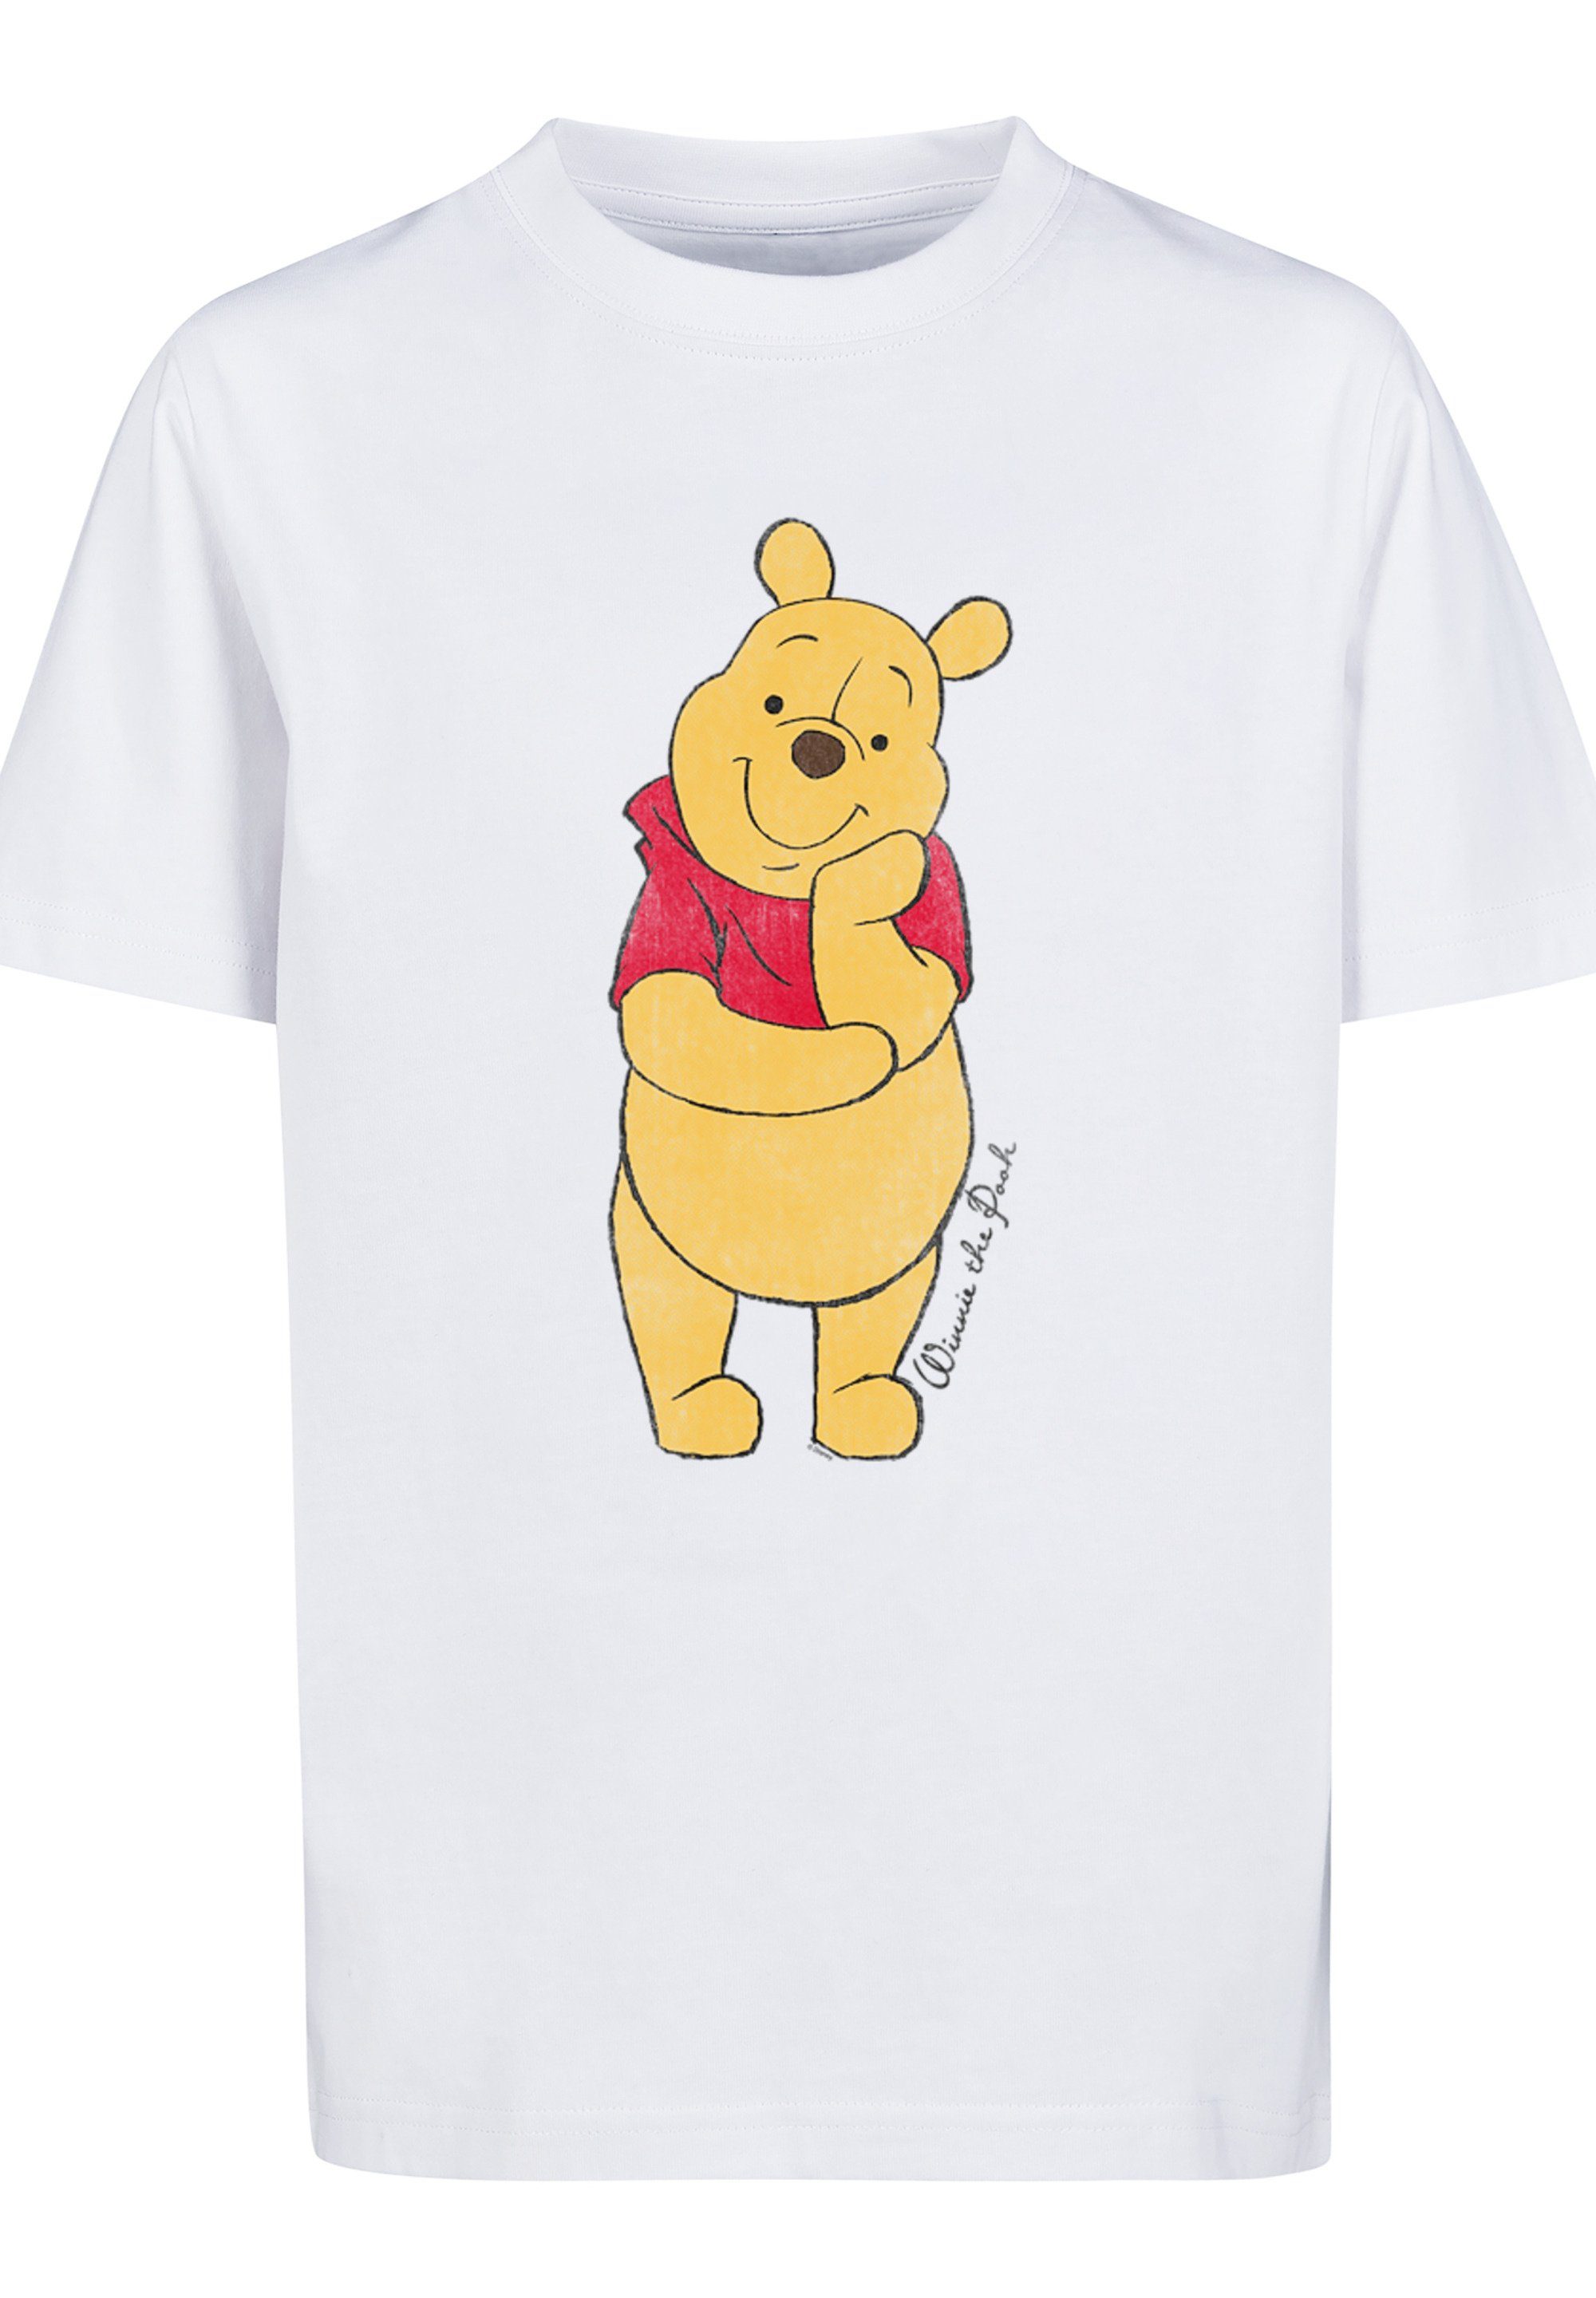 Disney T-Shirt Unisex F4NT4STIC Pooh weiß Kinder,Premium The Winnie Classic Merch,Jungen,Mädchen,Bedruckt